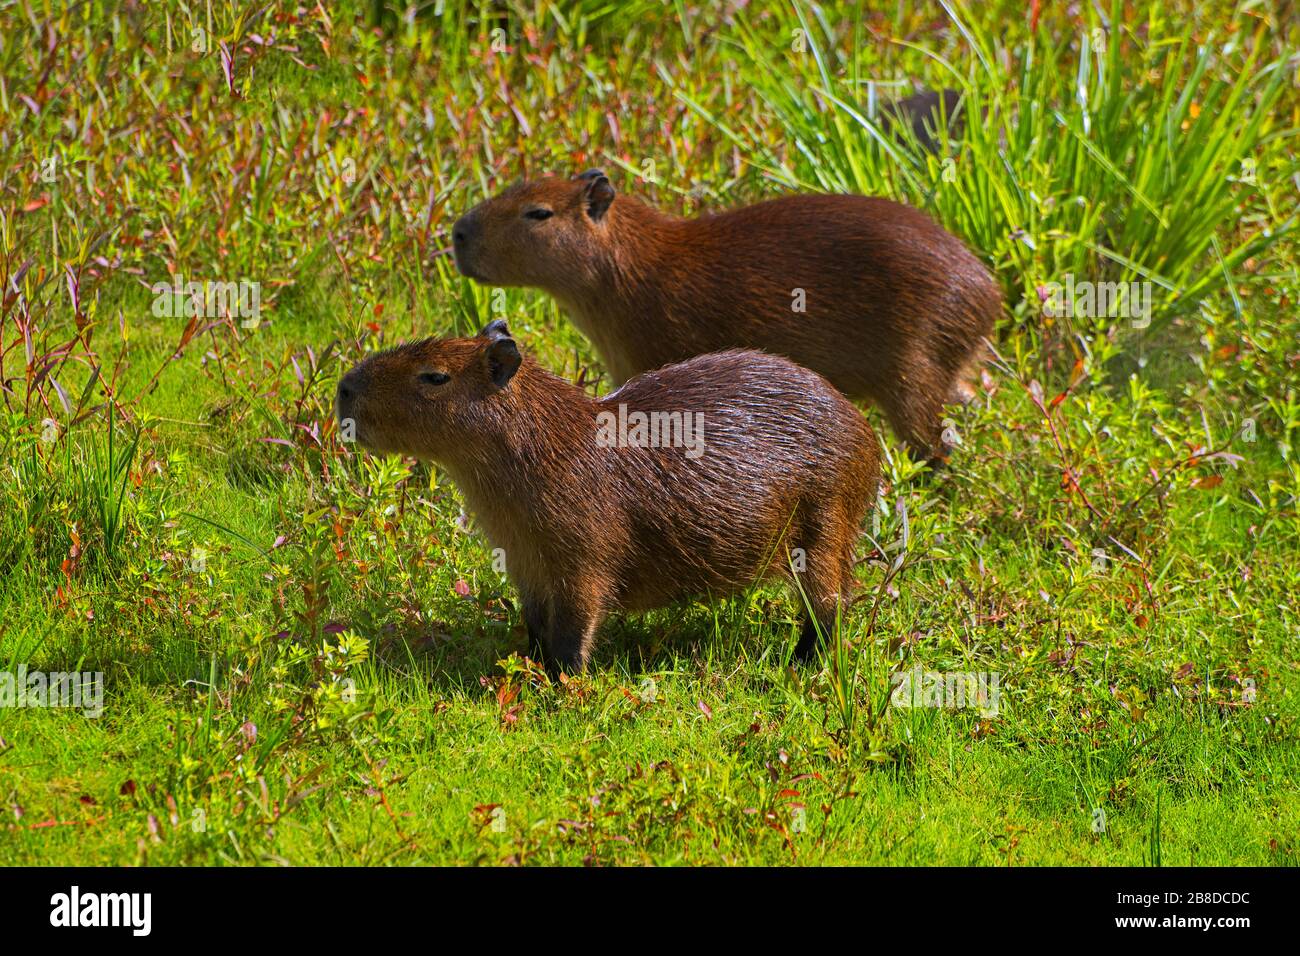 Parco Nazionale di El Palmar, Provincia Entre Rios / Argentina: Capybara, il più grande roditore vivente del mondo Foto Stock